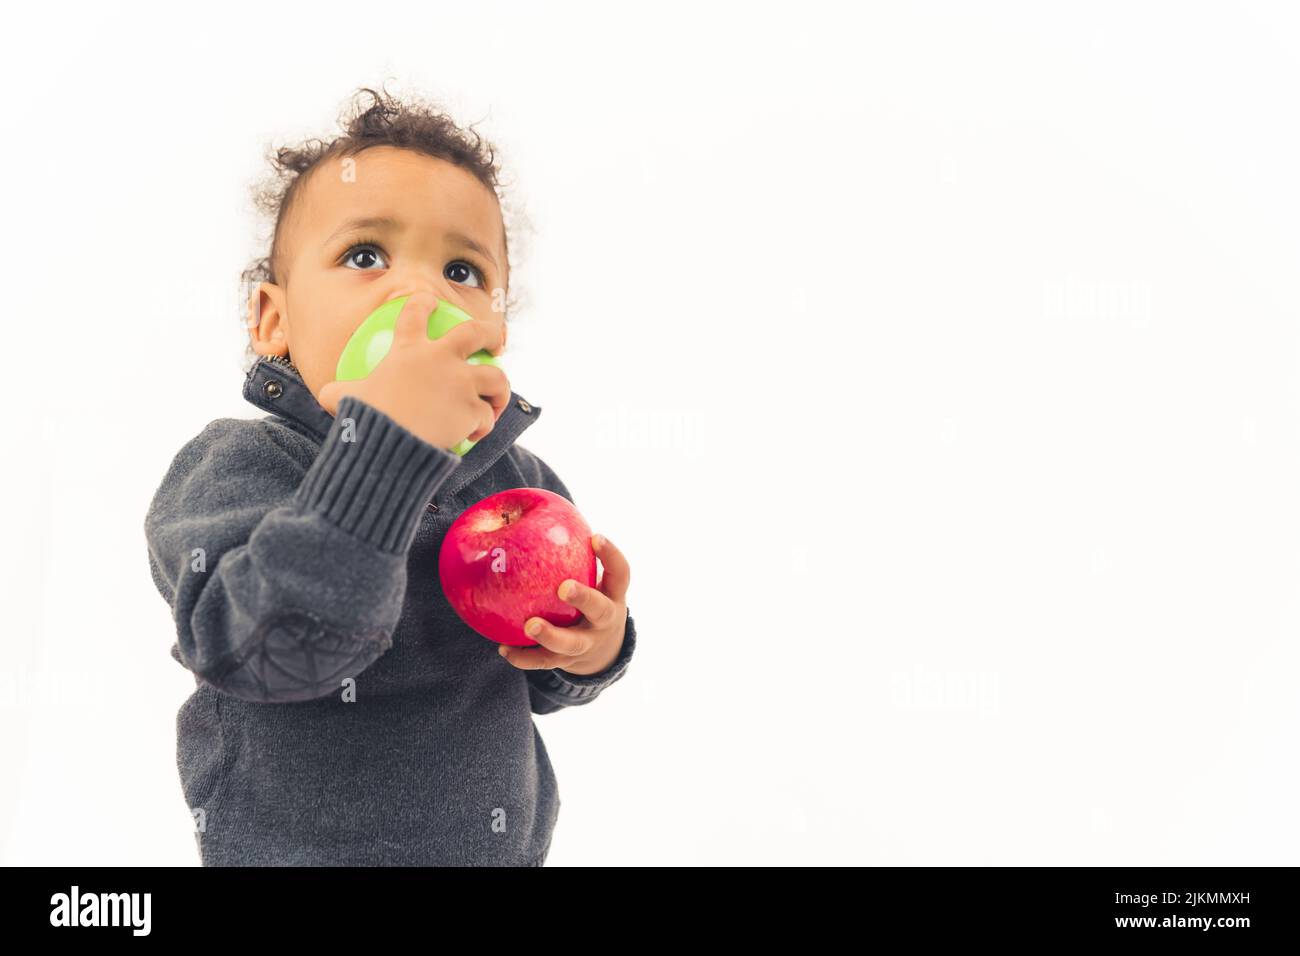 Petit garçon afro-américain mangeant une pomme avec sa main droite et tenant une autre pomme avec une autre - fermé isolé. Photo de haute qualité Banque D'Images